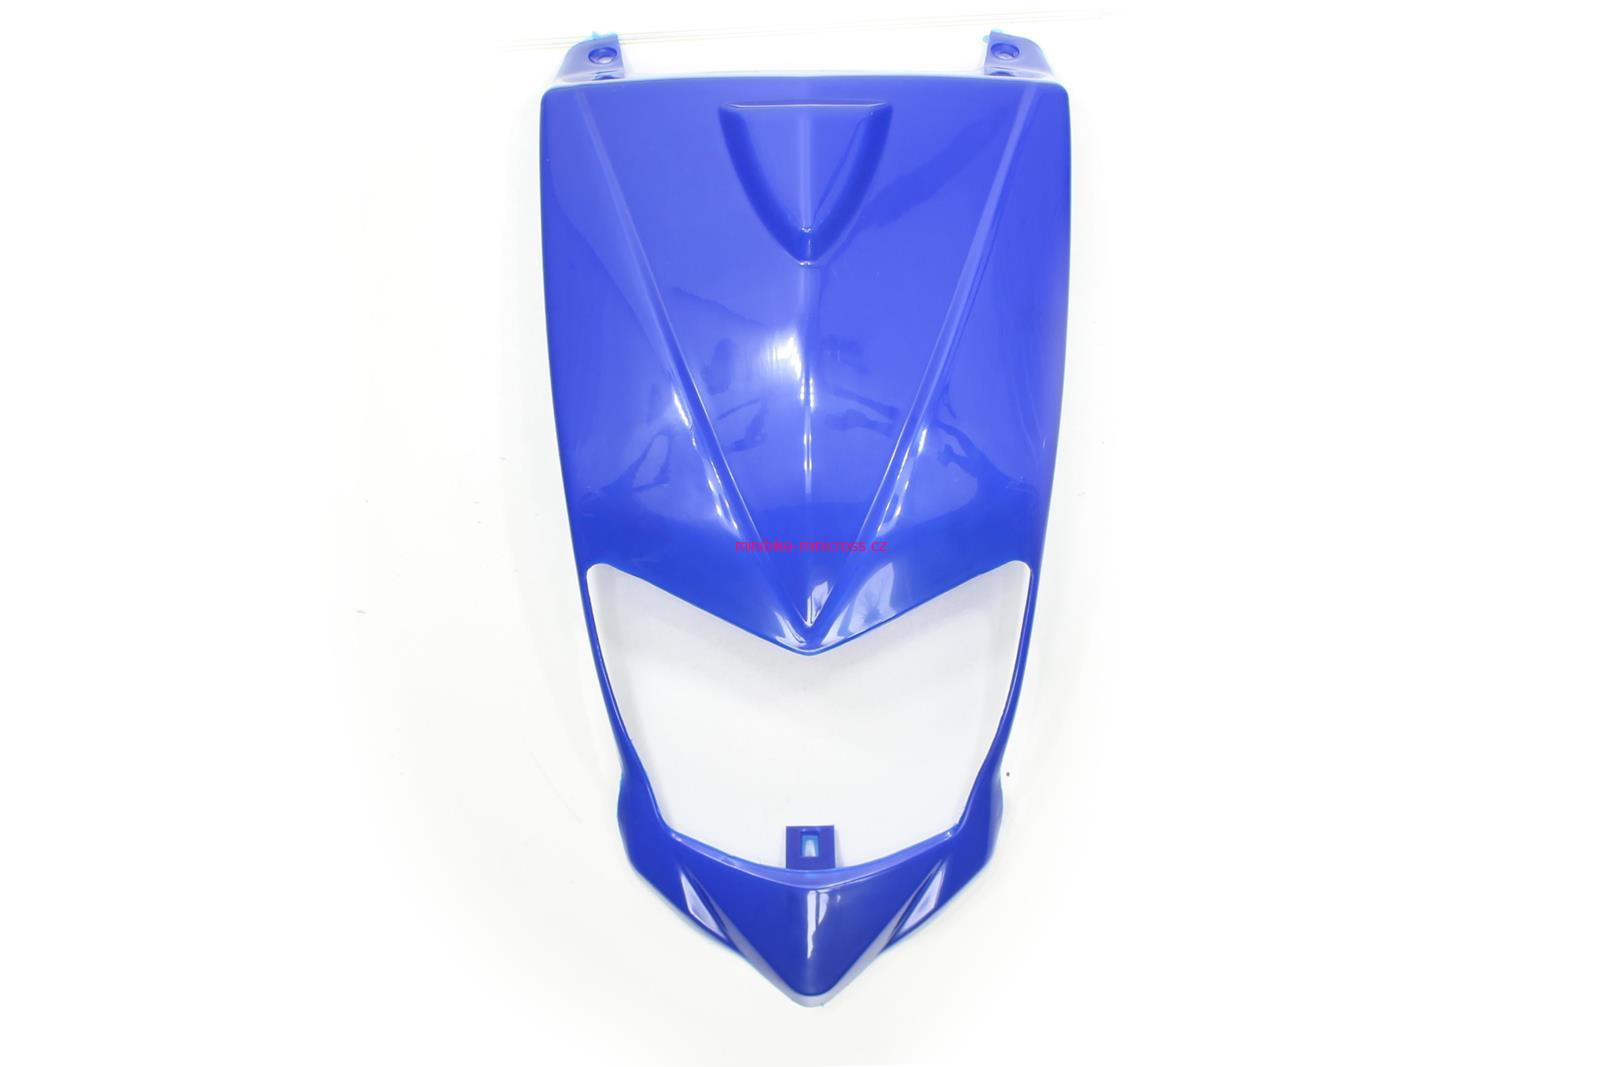 Plast na čtyřkolku Bashan 200cc 250cc přední pod světlo blue